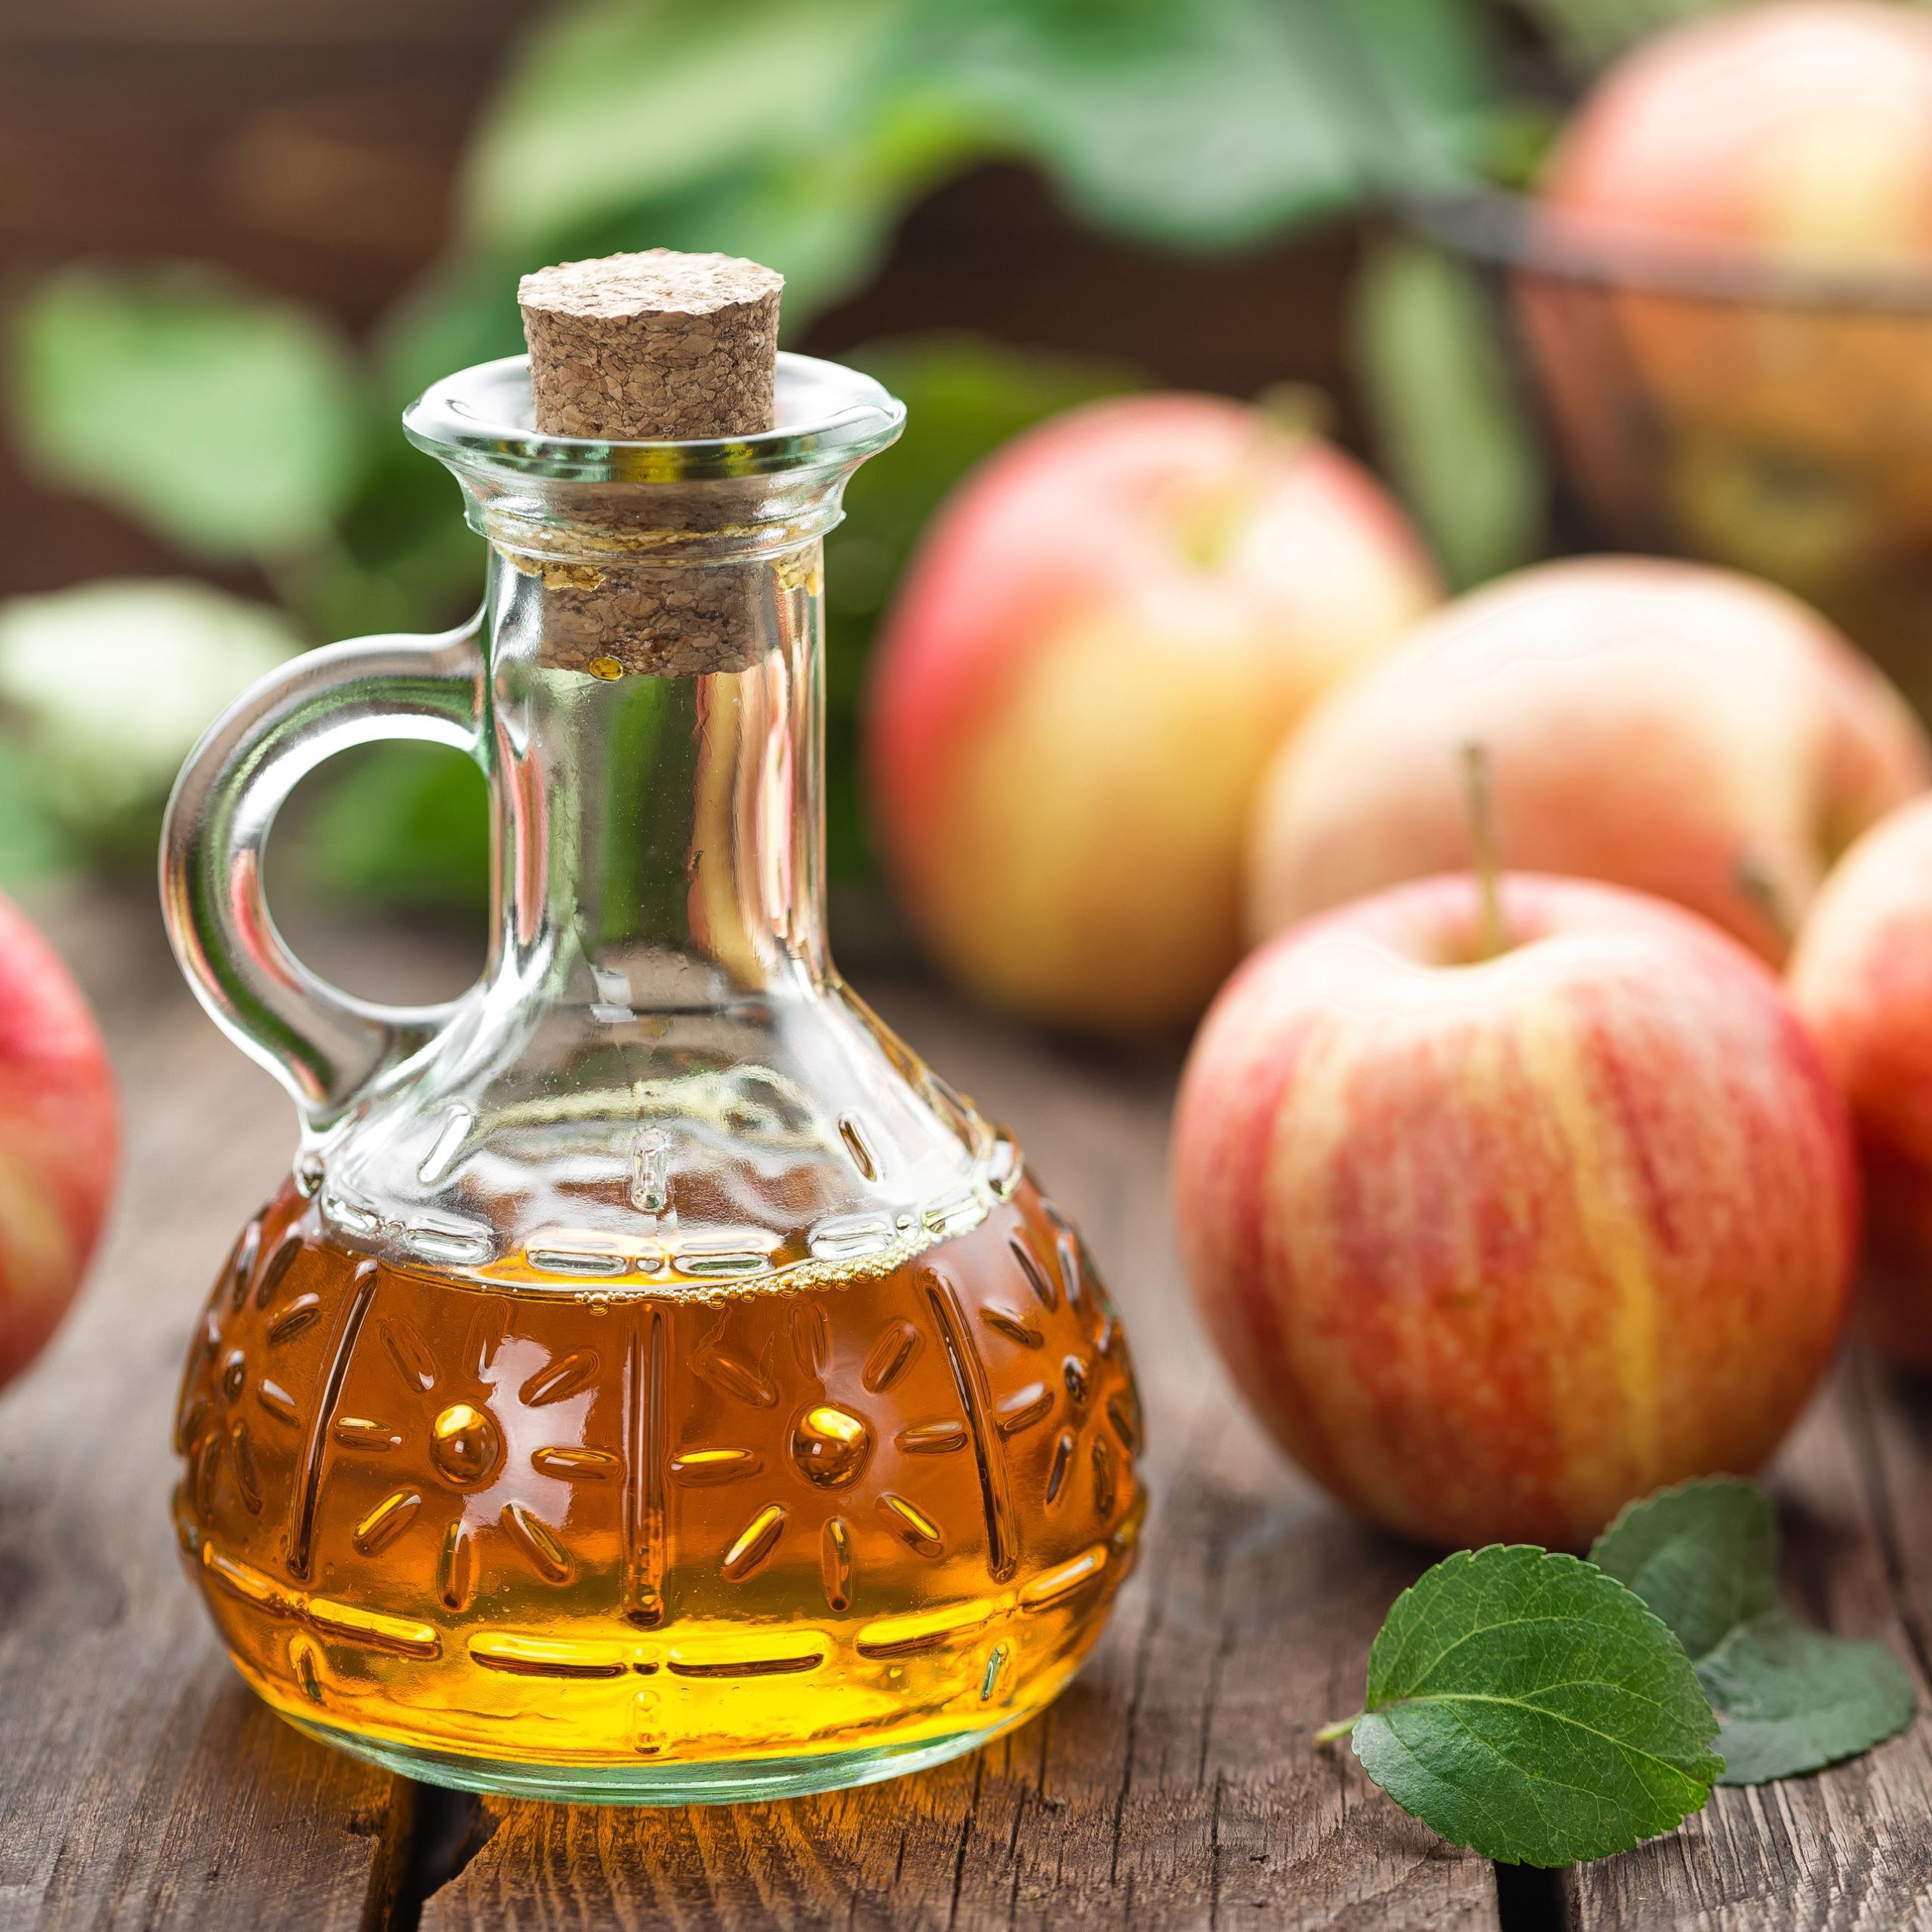 يساعد خل التفاح في تقوية جهاز المناعة وعلاج نزلات البرد